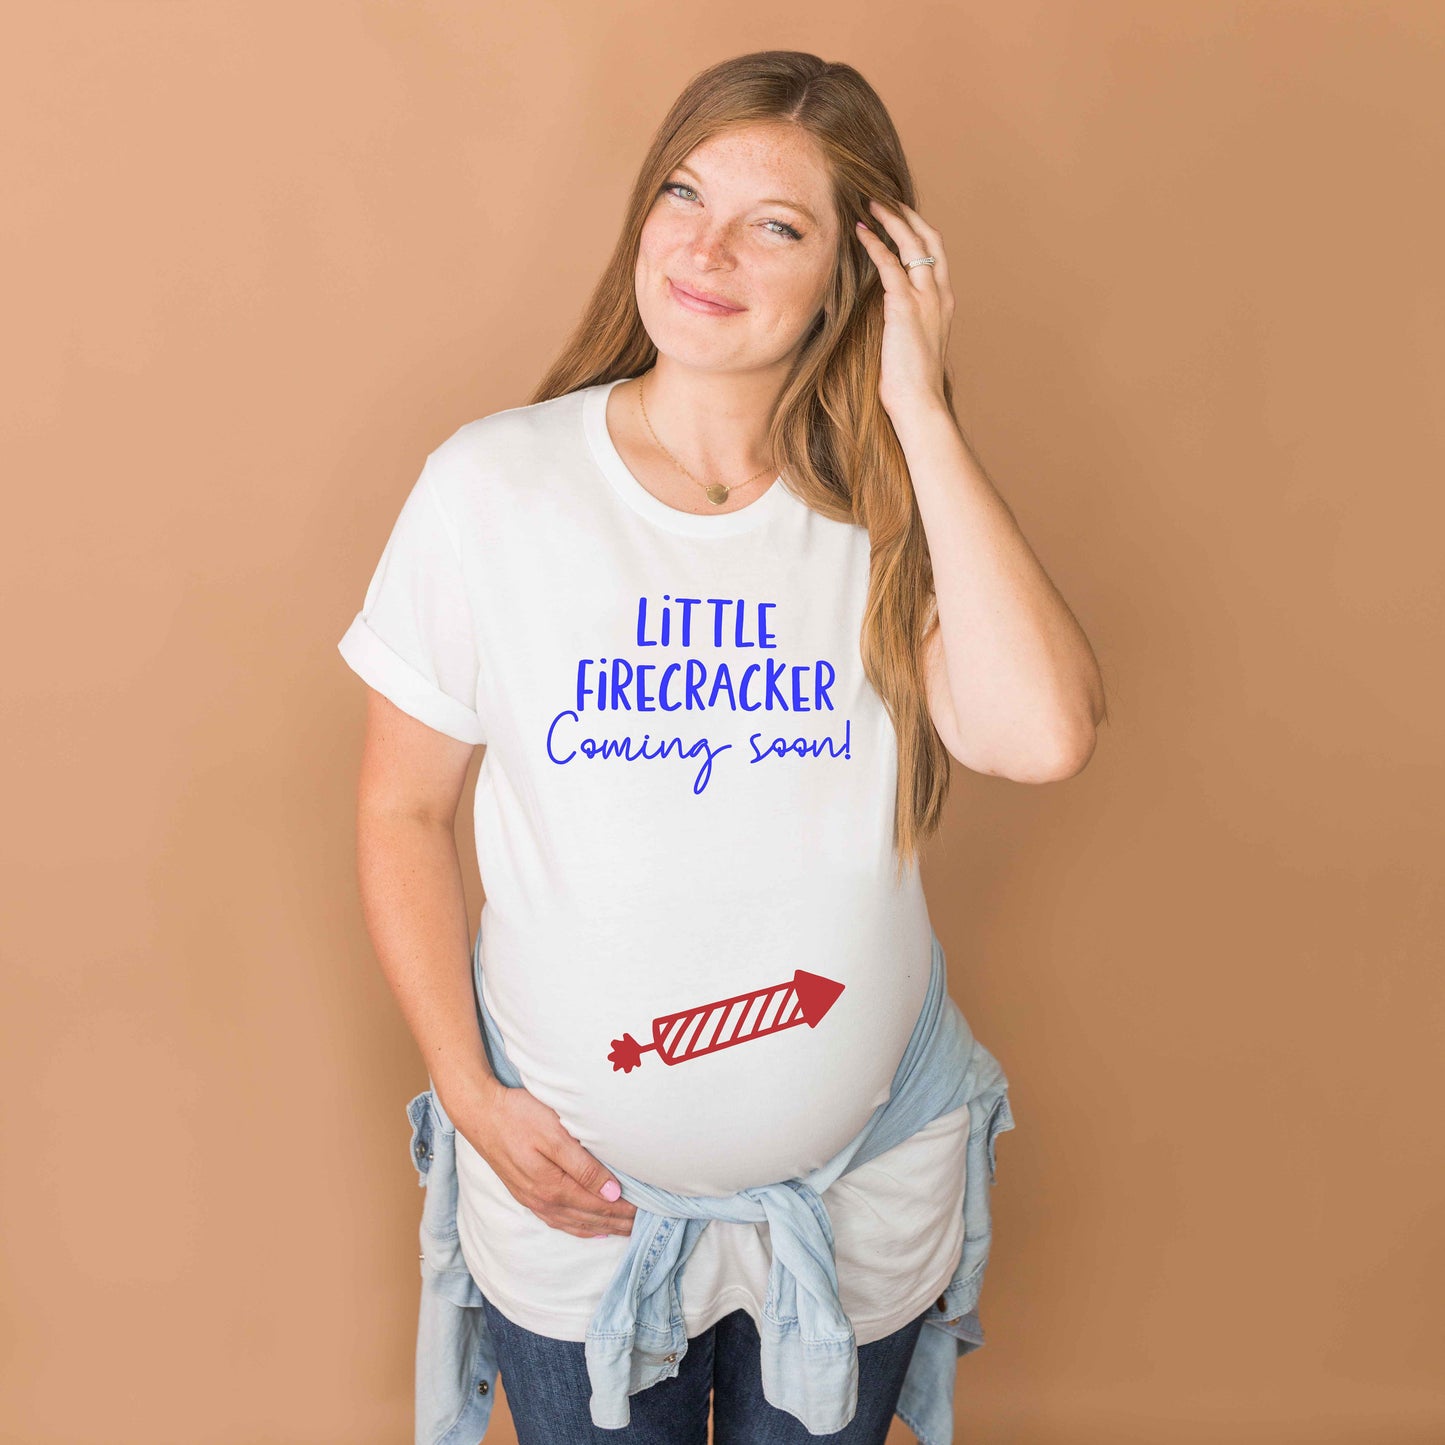 Little Firecracker Coming Soon t-shirt - 4th of July pregnancy announcement shirt - pregnancy shirt - maternity shirt